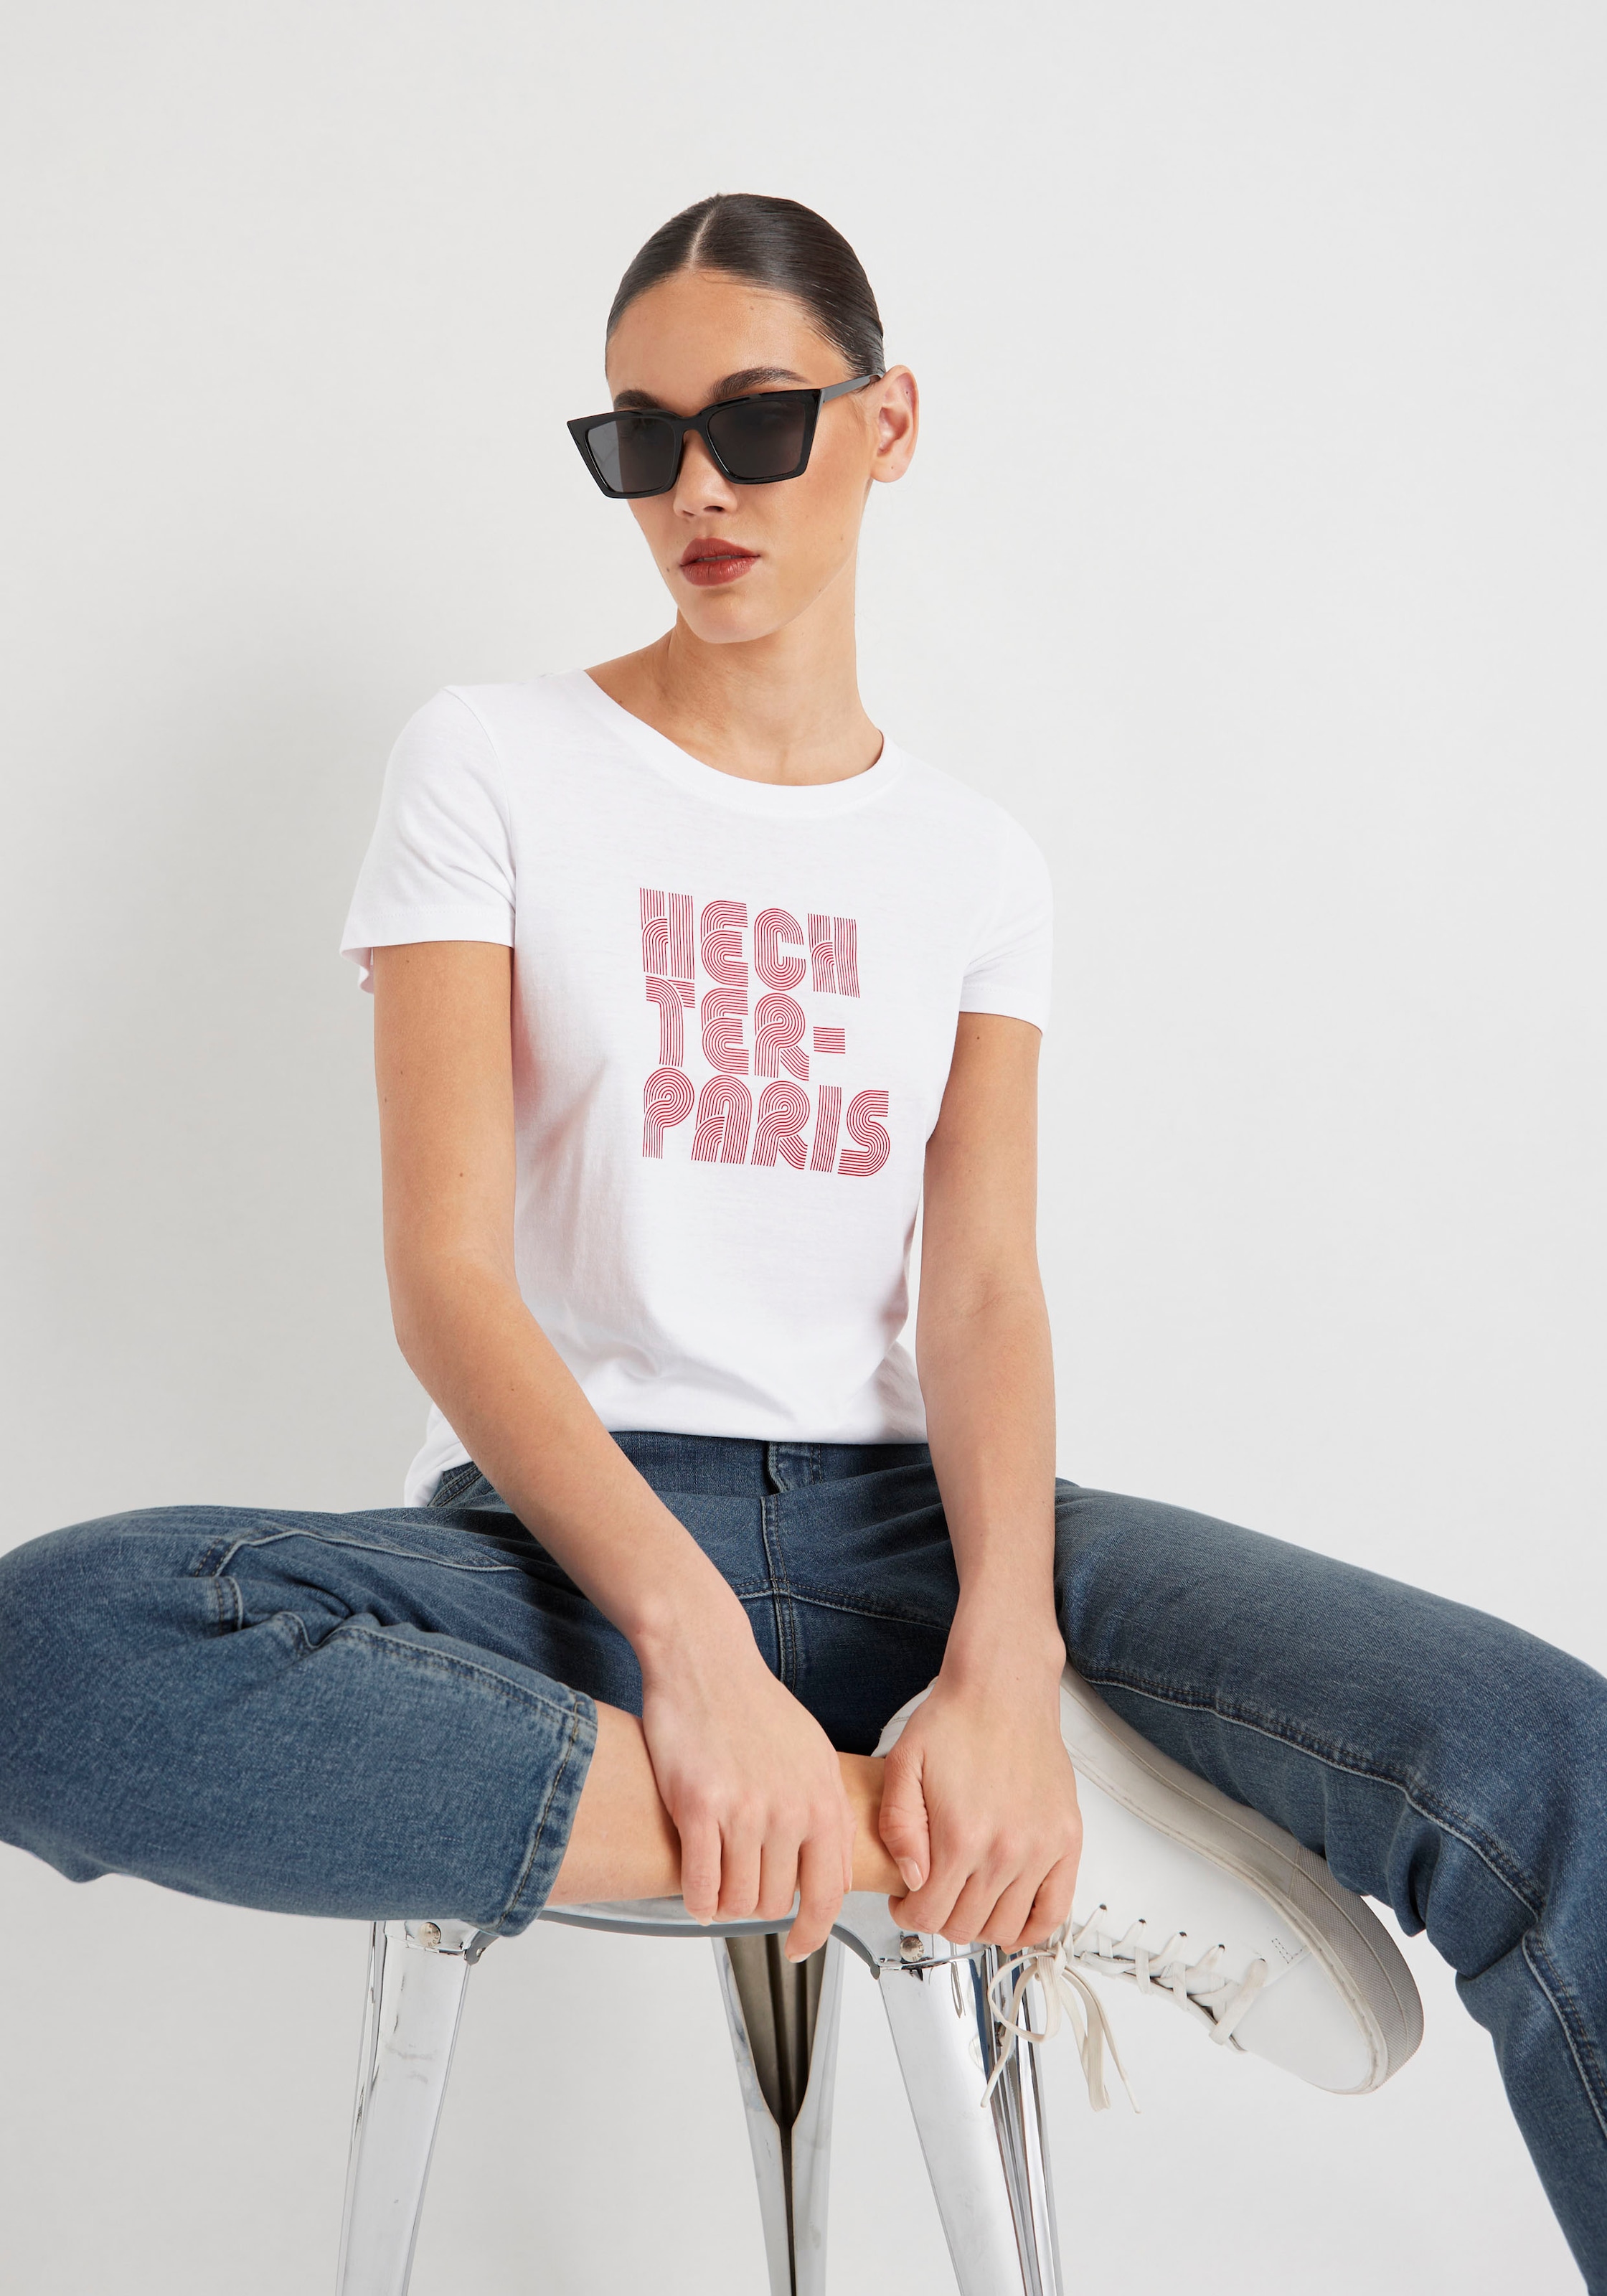 PARIS OTTO mit T-Shirt, Online Druck Shop im HECHTER